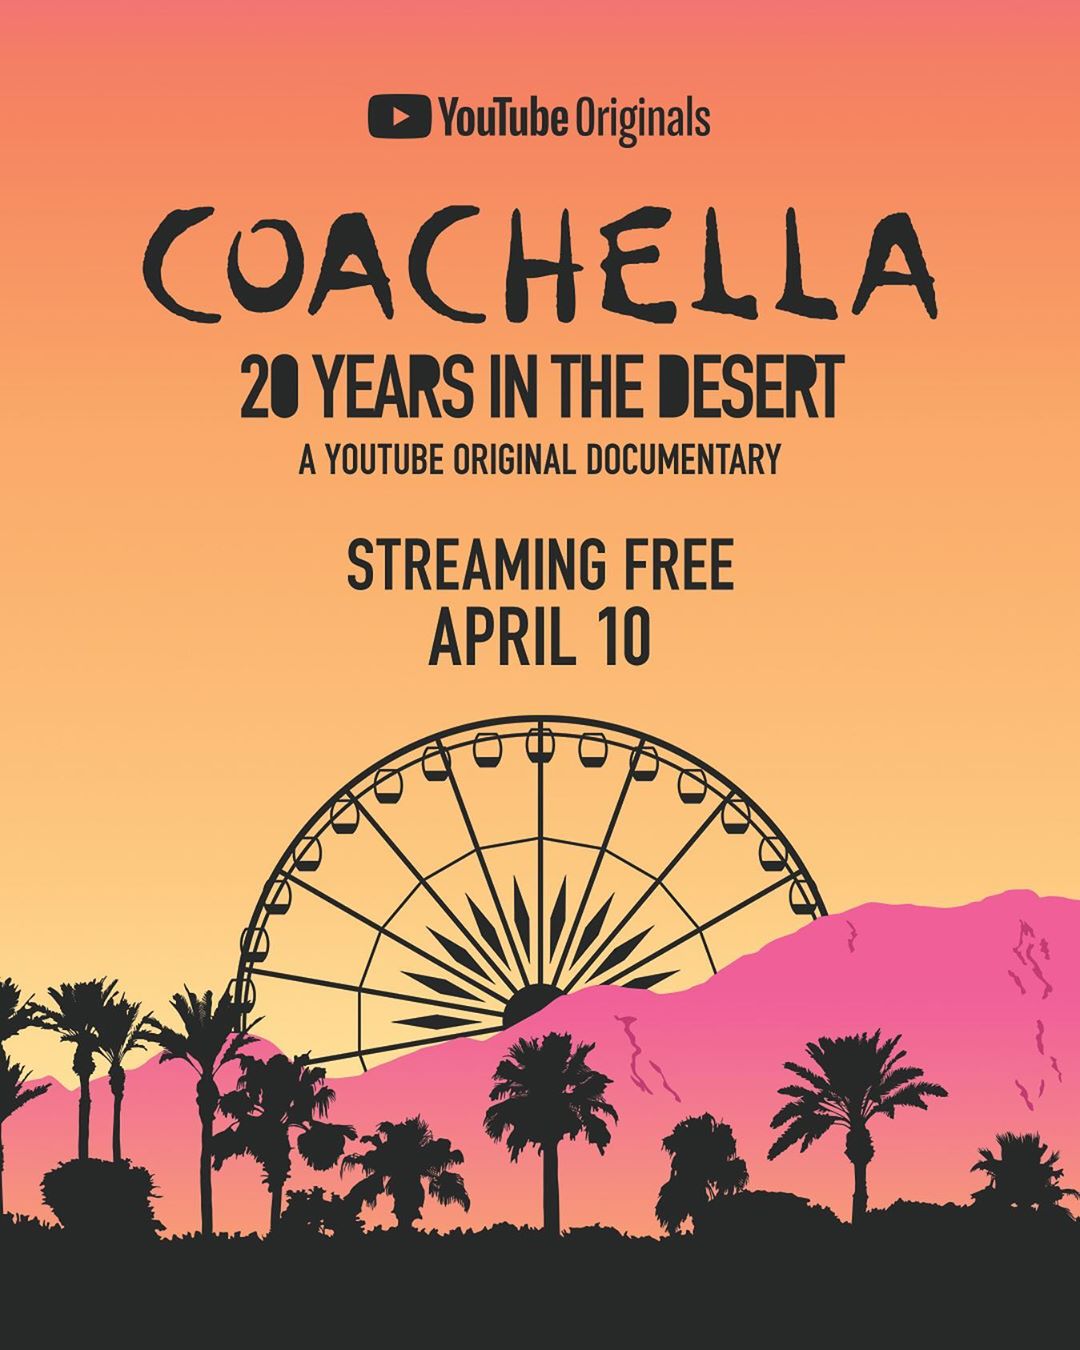 ¡EL Festival de Música y Artes “Coachella” anunció el lanzamiento del